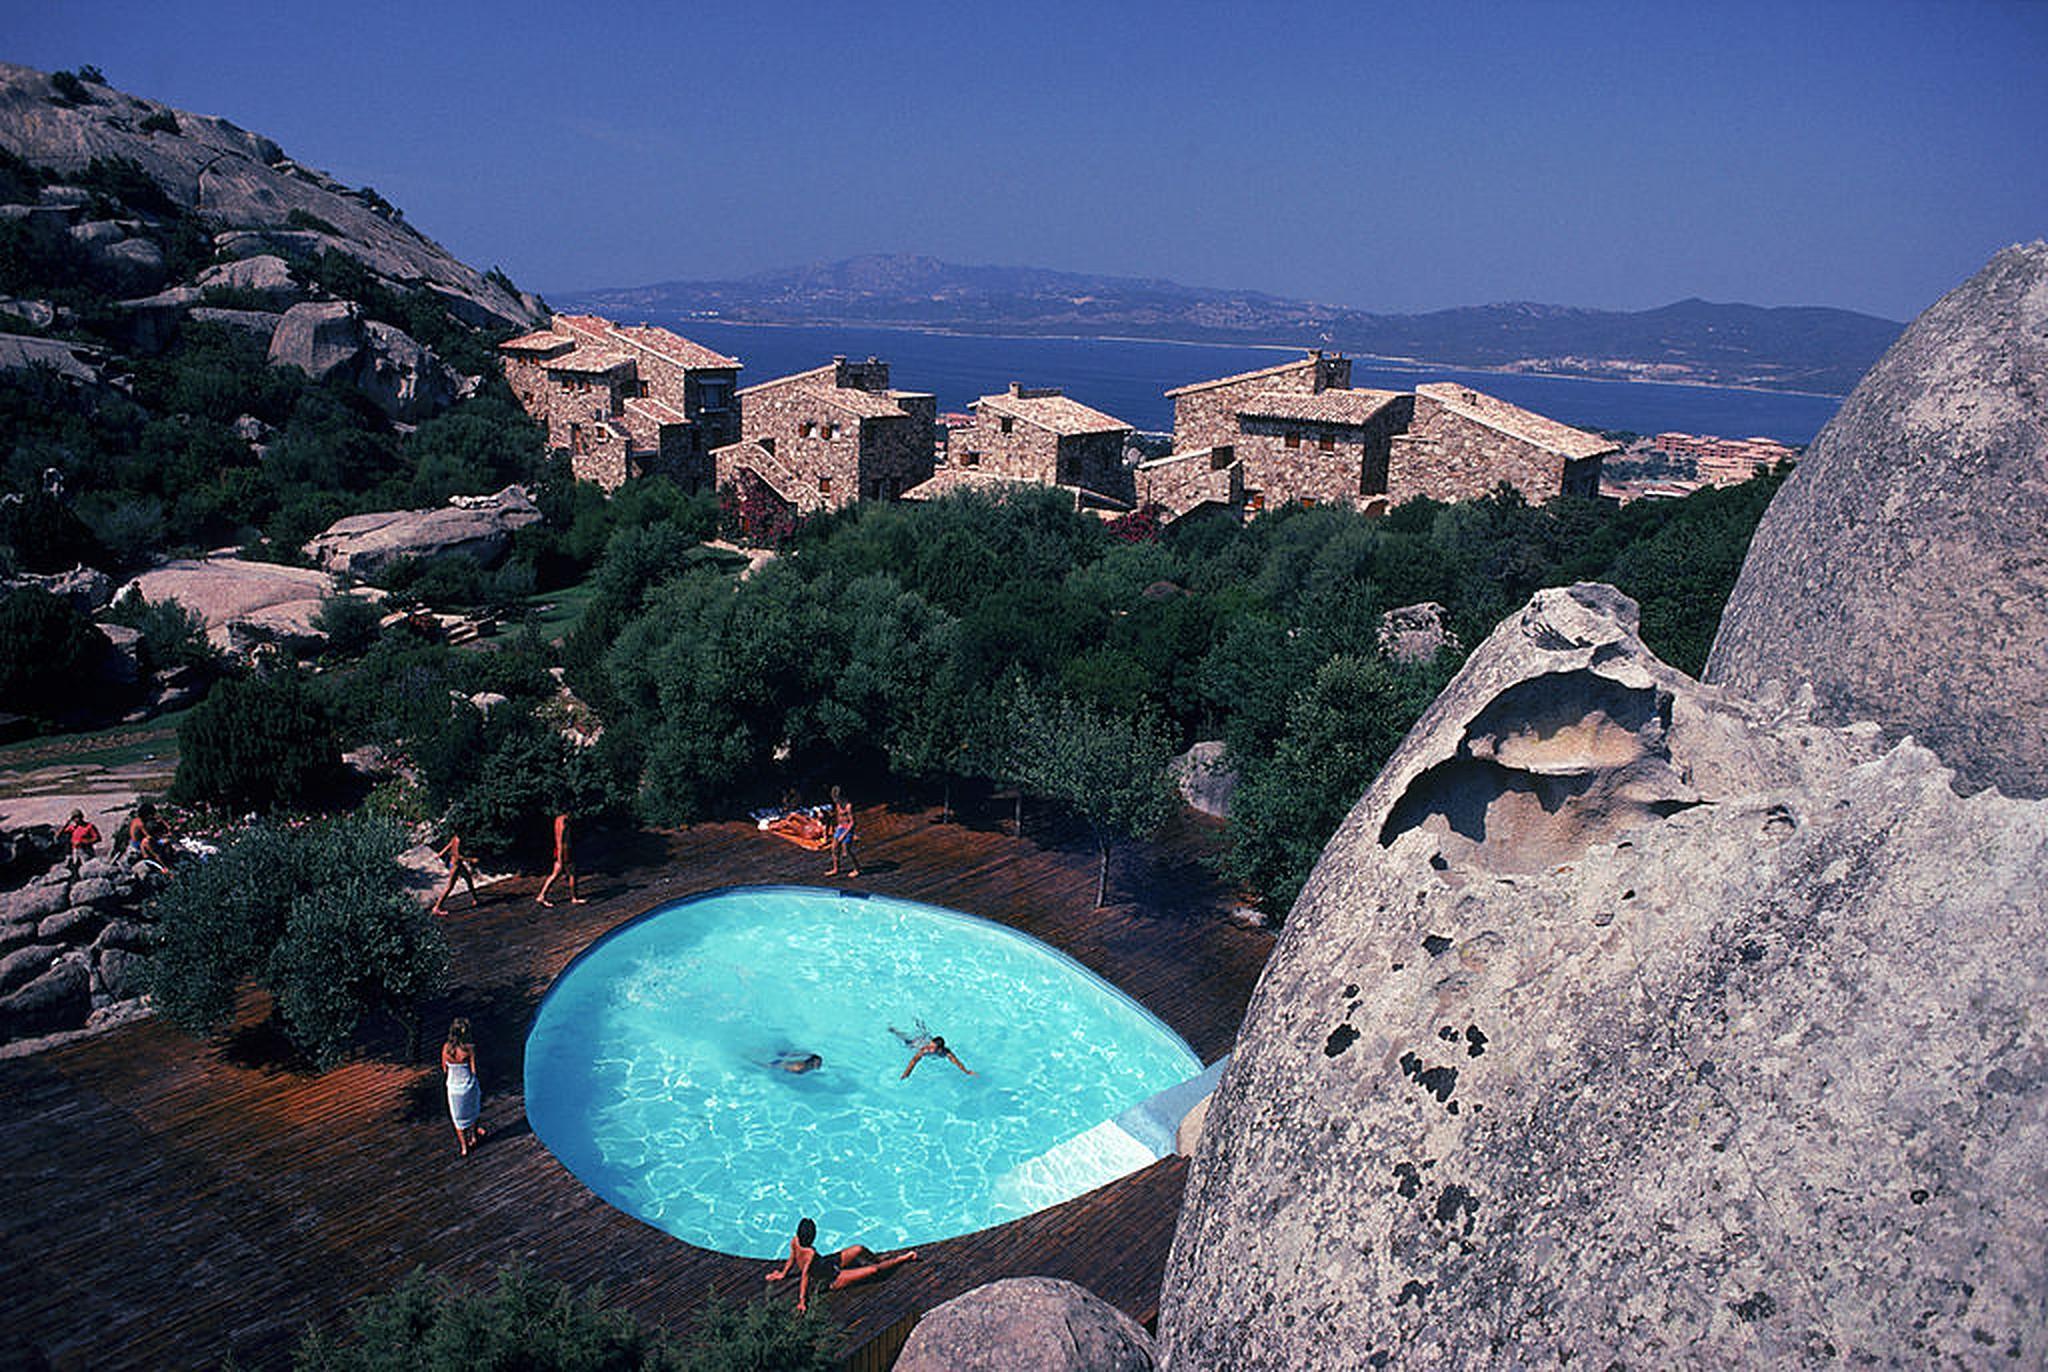 Pool at Porto Rotondo, Sardinia, Italie, août 1982 par Slim Aarons